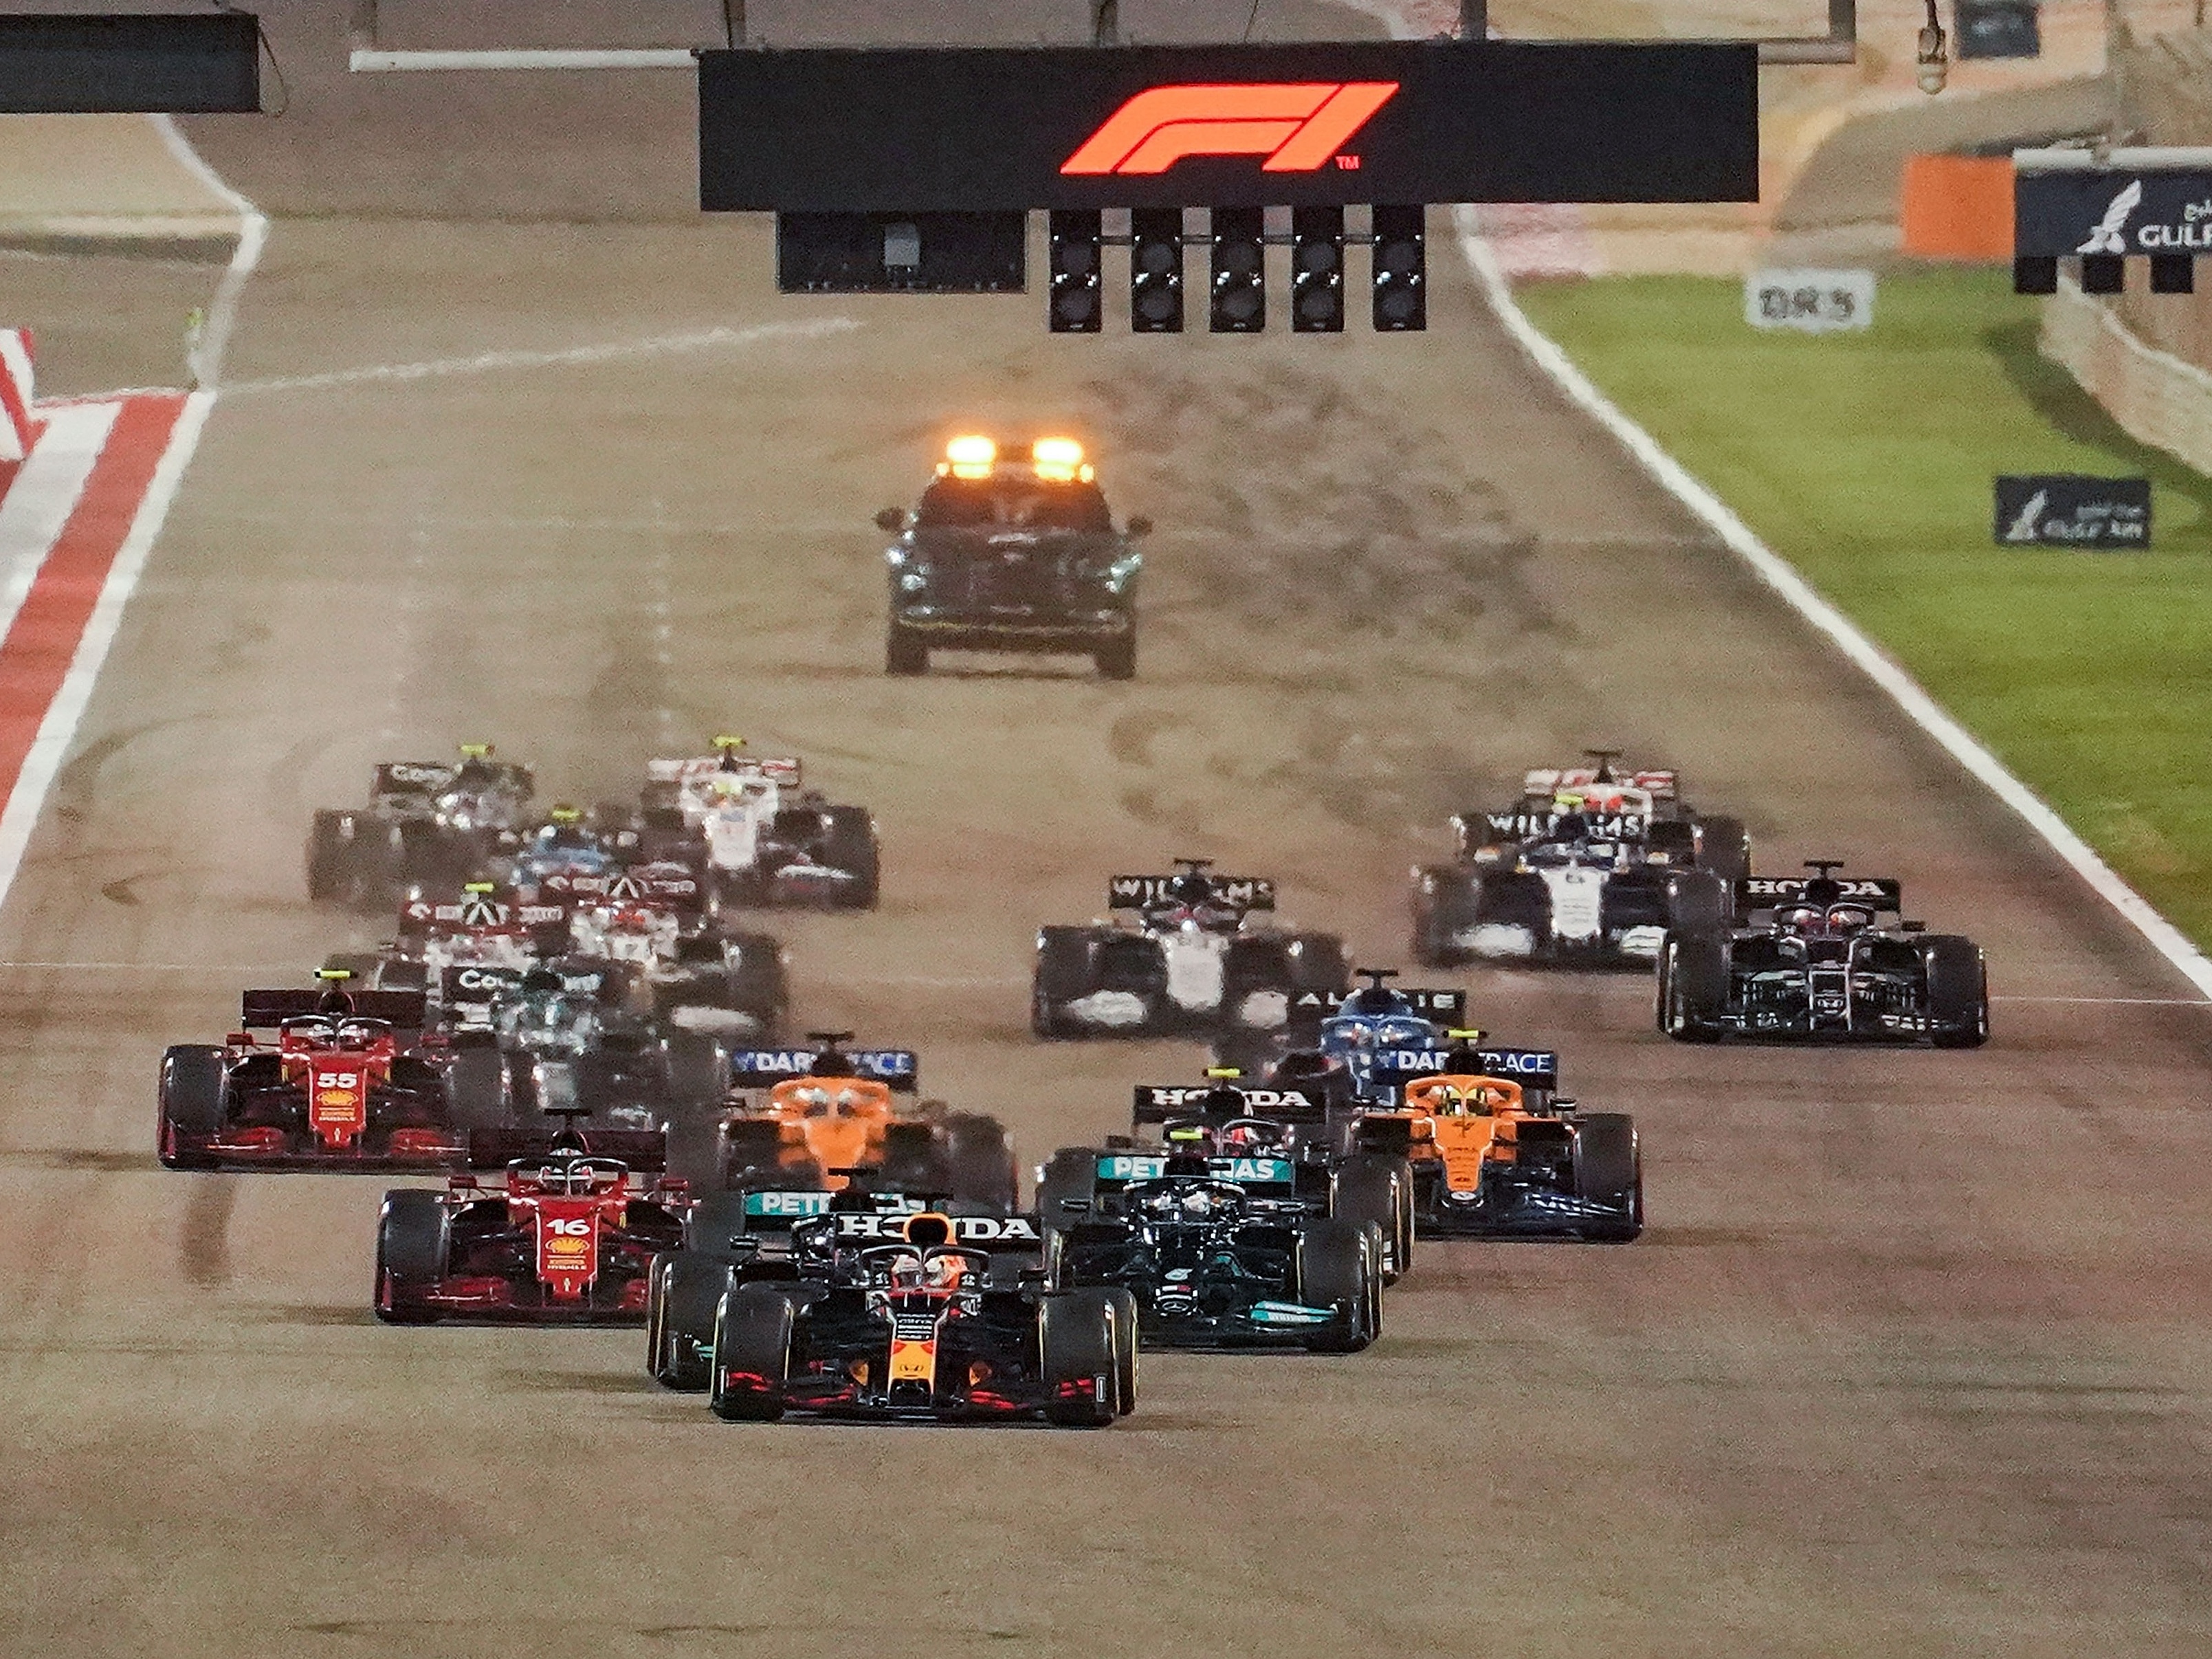 Campeonato Mundial de Fórmula 1 começa no Bahrein: horários e onde